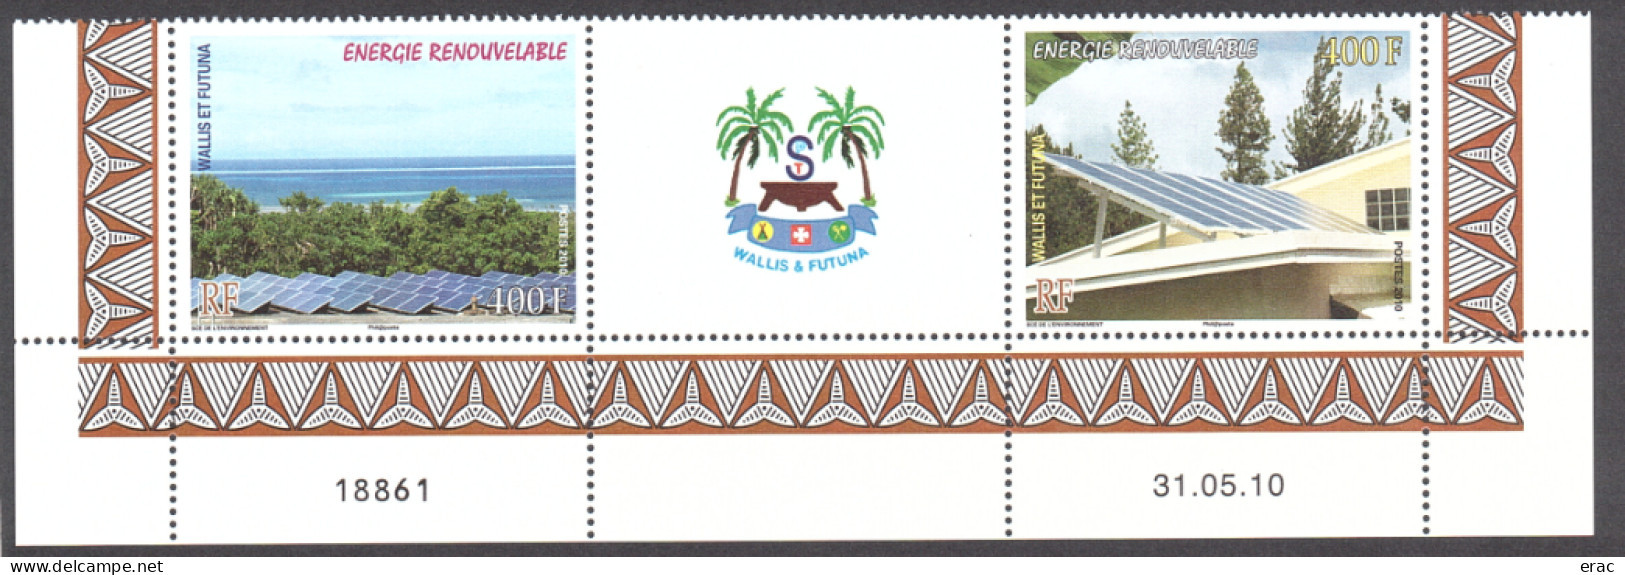 Wallis Et Futuna - 2010 - Bas De Feuille Daté Des N° 737 + 738 + Vignette Centrale - Neuf ** - Energie Renouvelable - Ungebraucht